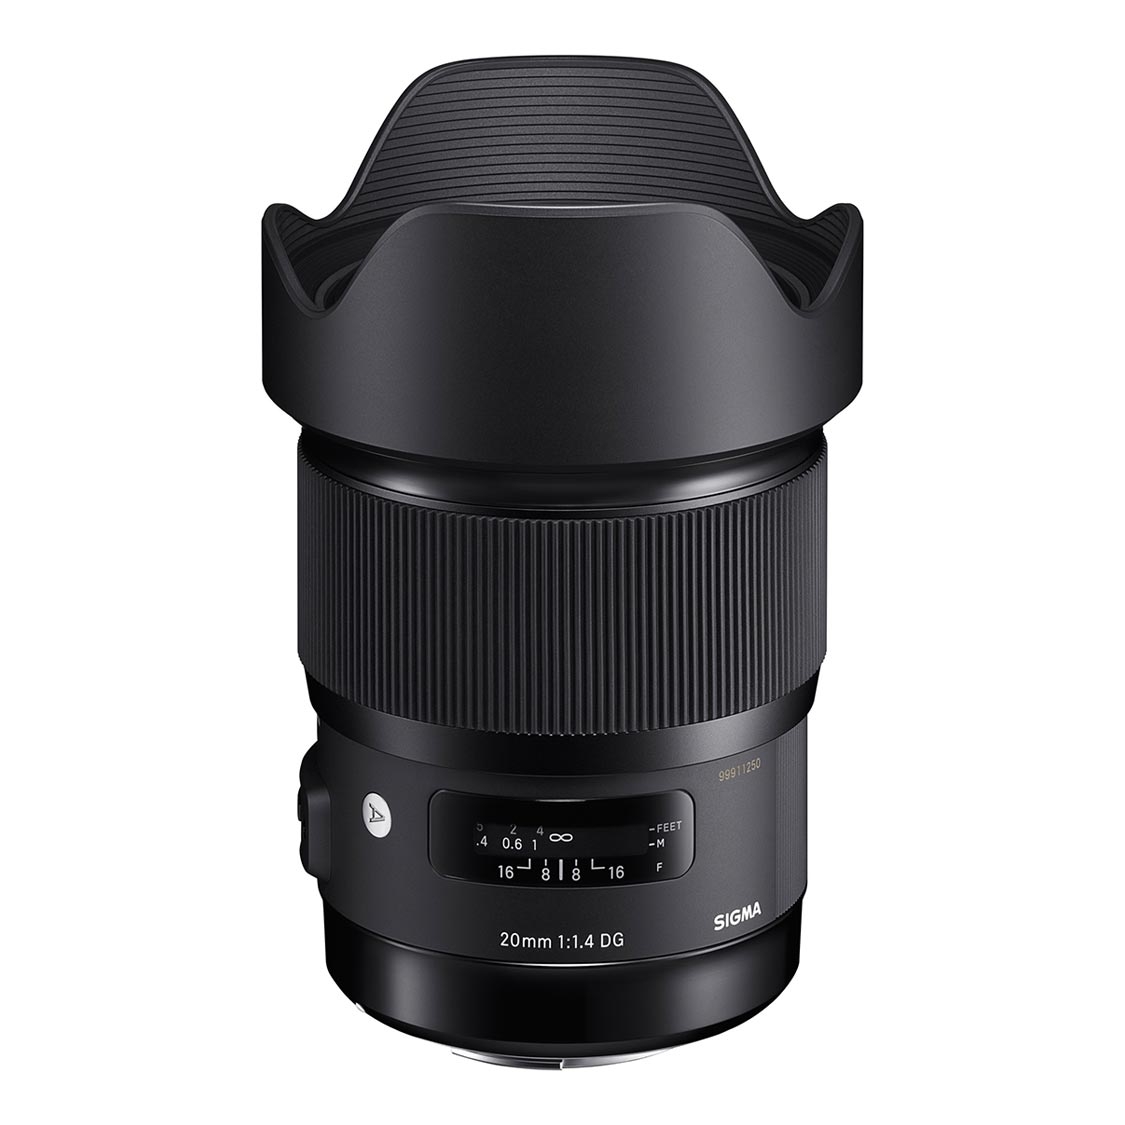 Sigma 20mm f1.4 DG HSM Art Lens for Nikon F Mount